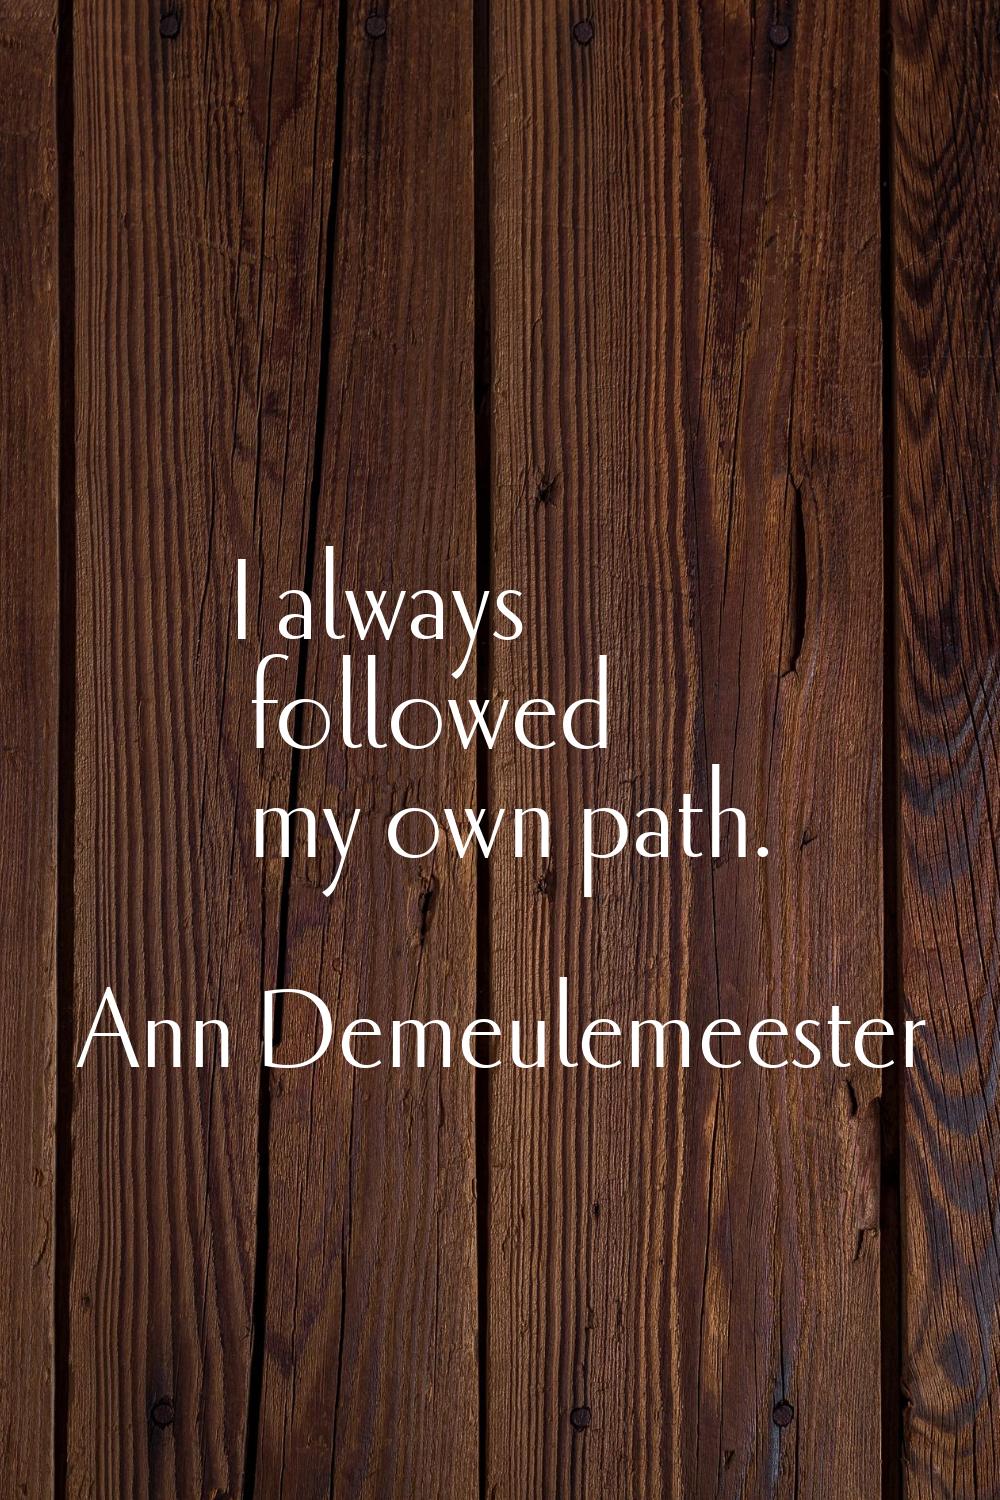 I always followed my own path.